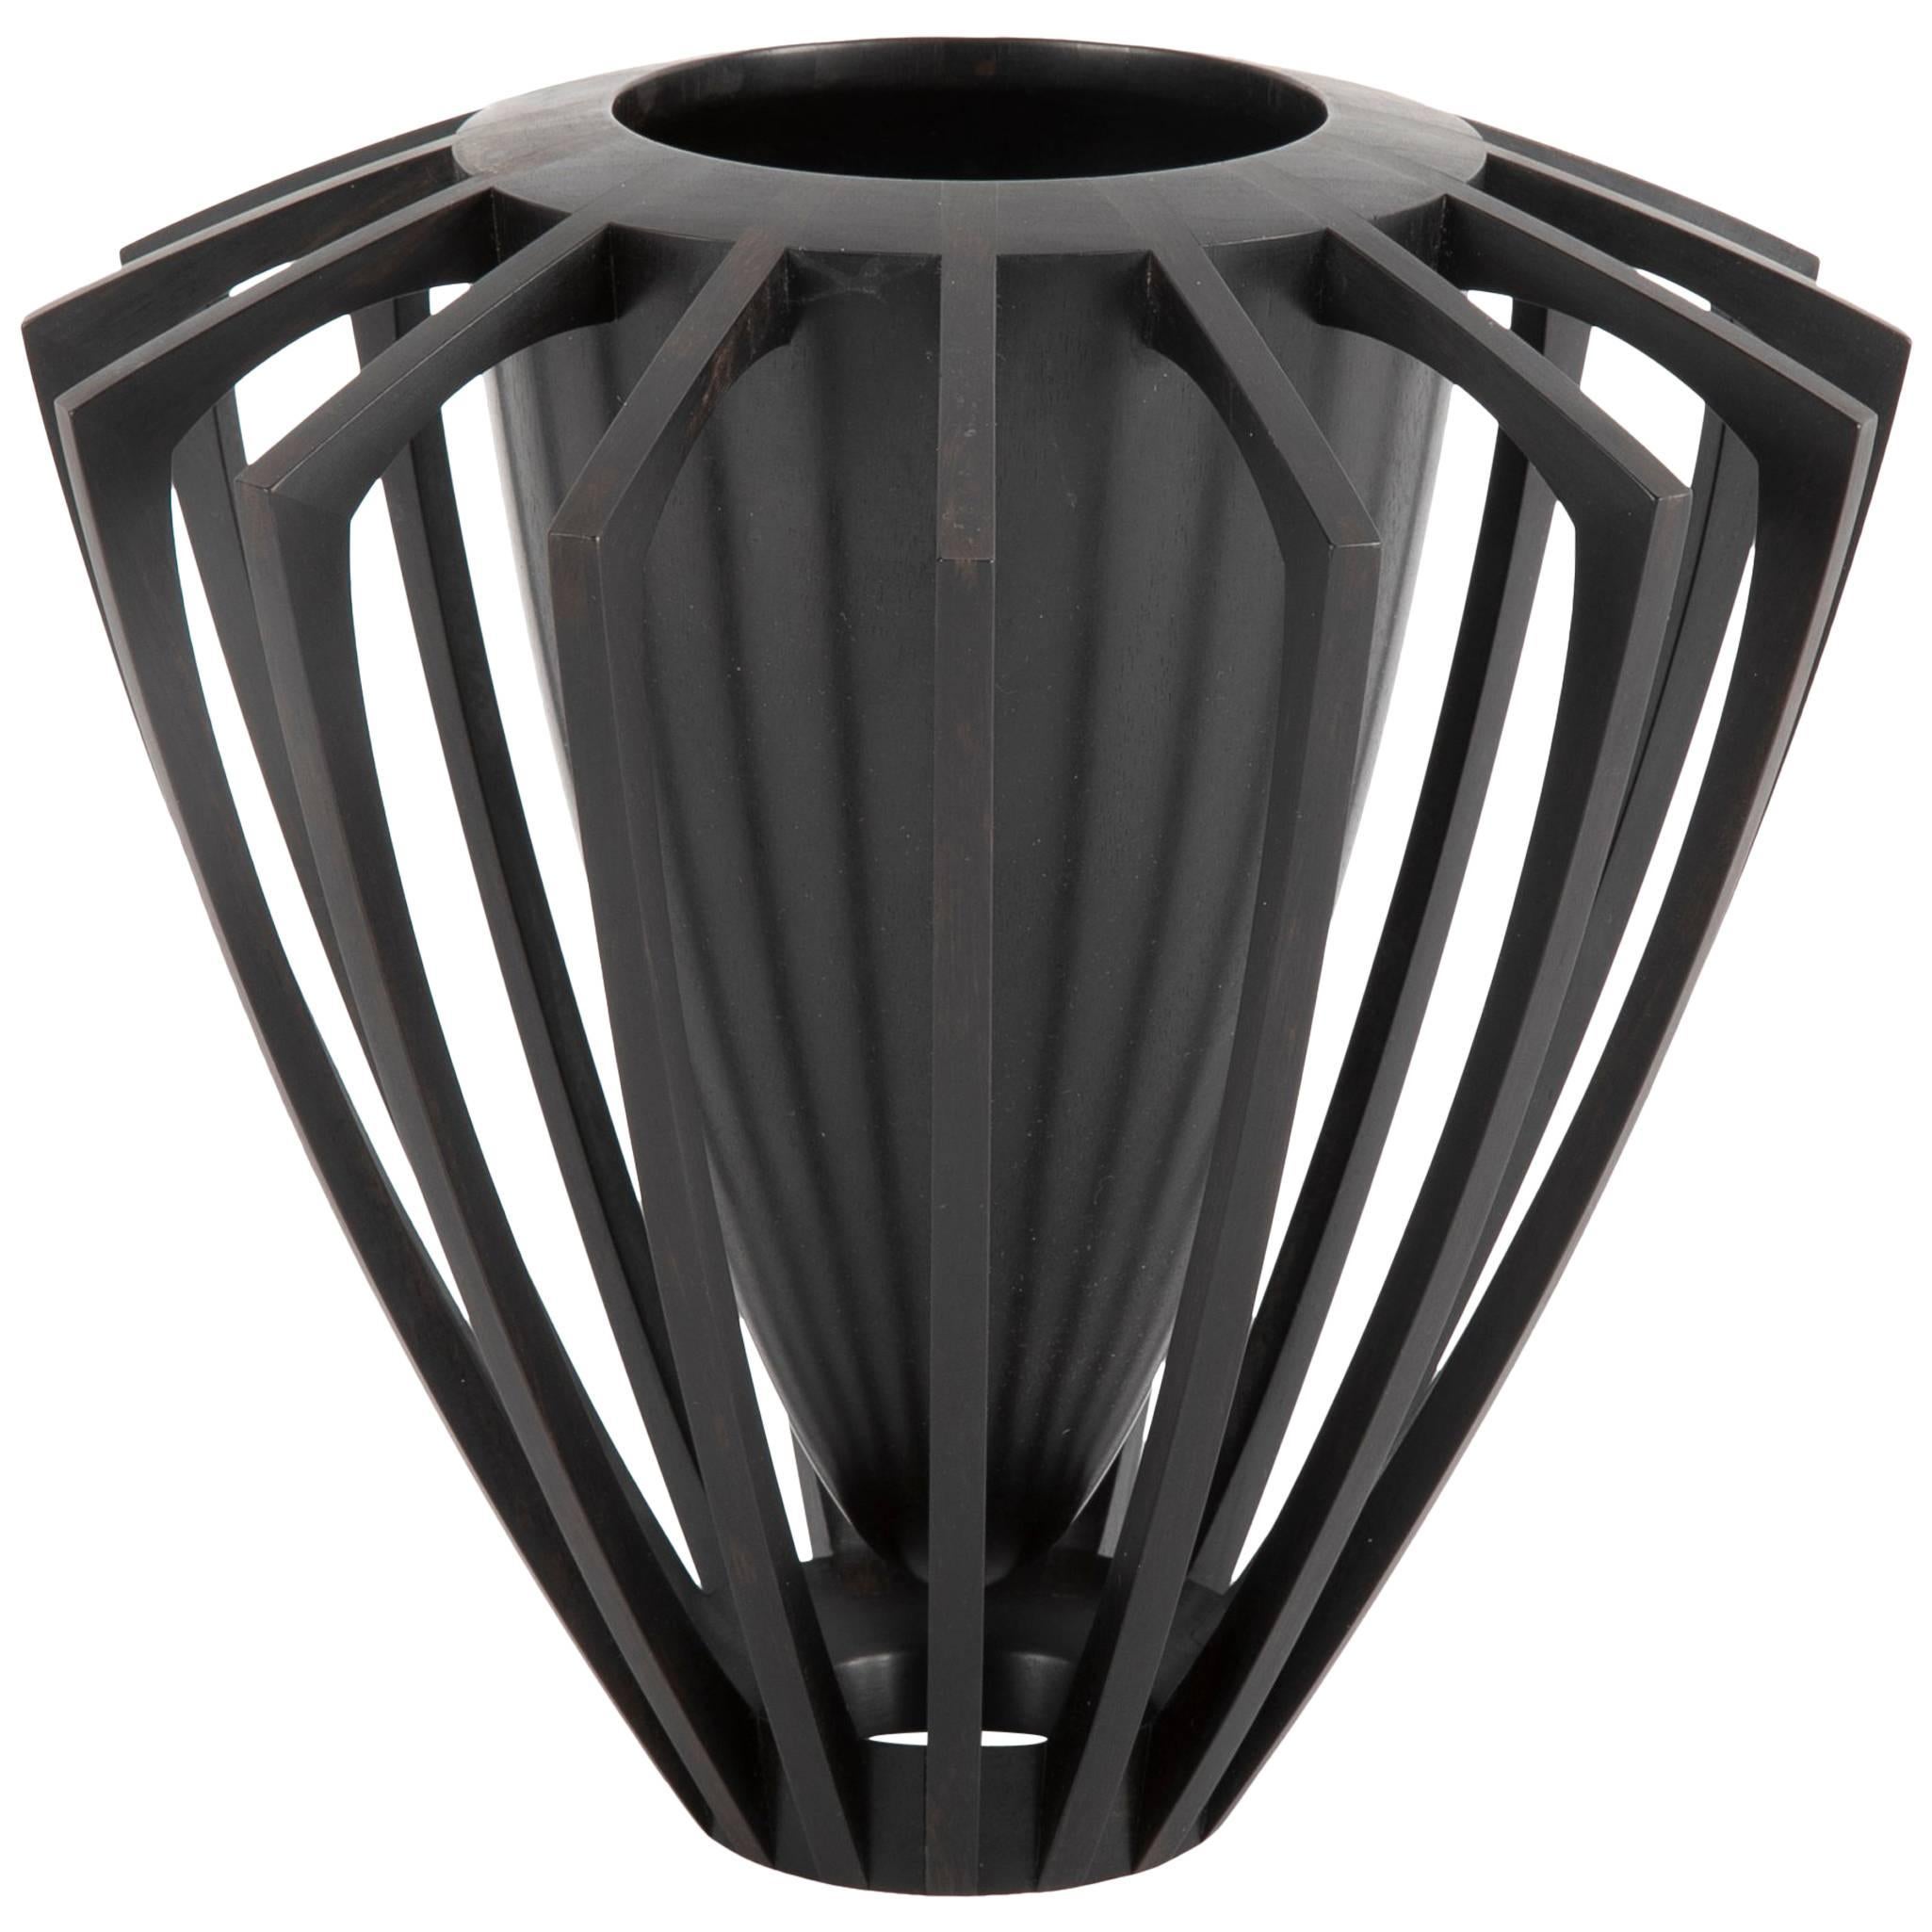 Mark Nantz Ebony Vase Titled "The Black Hole" For Sale